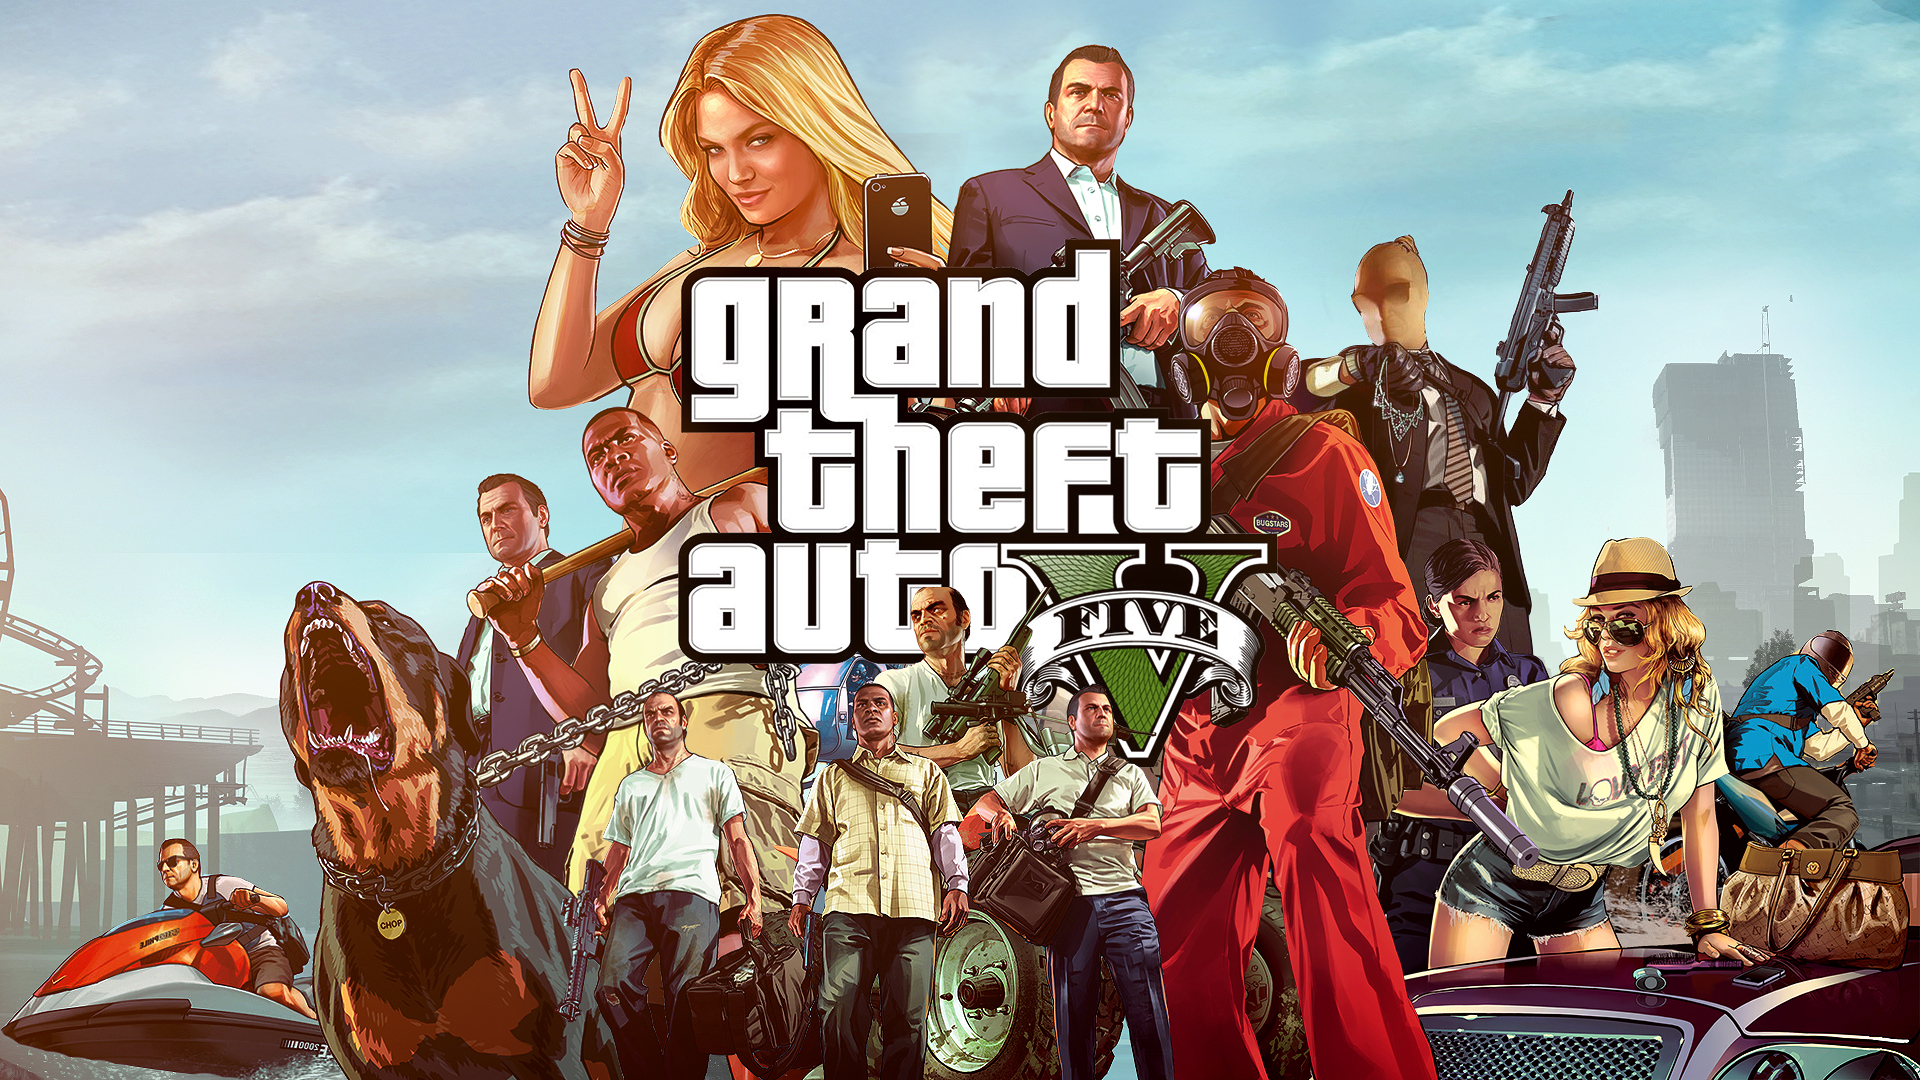 Grand Theft Auto V (PC) Review - GodisaGeek.com